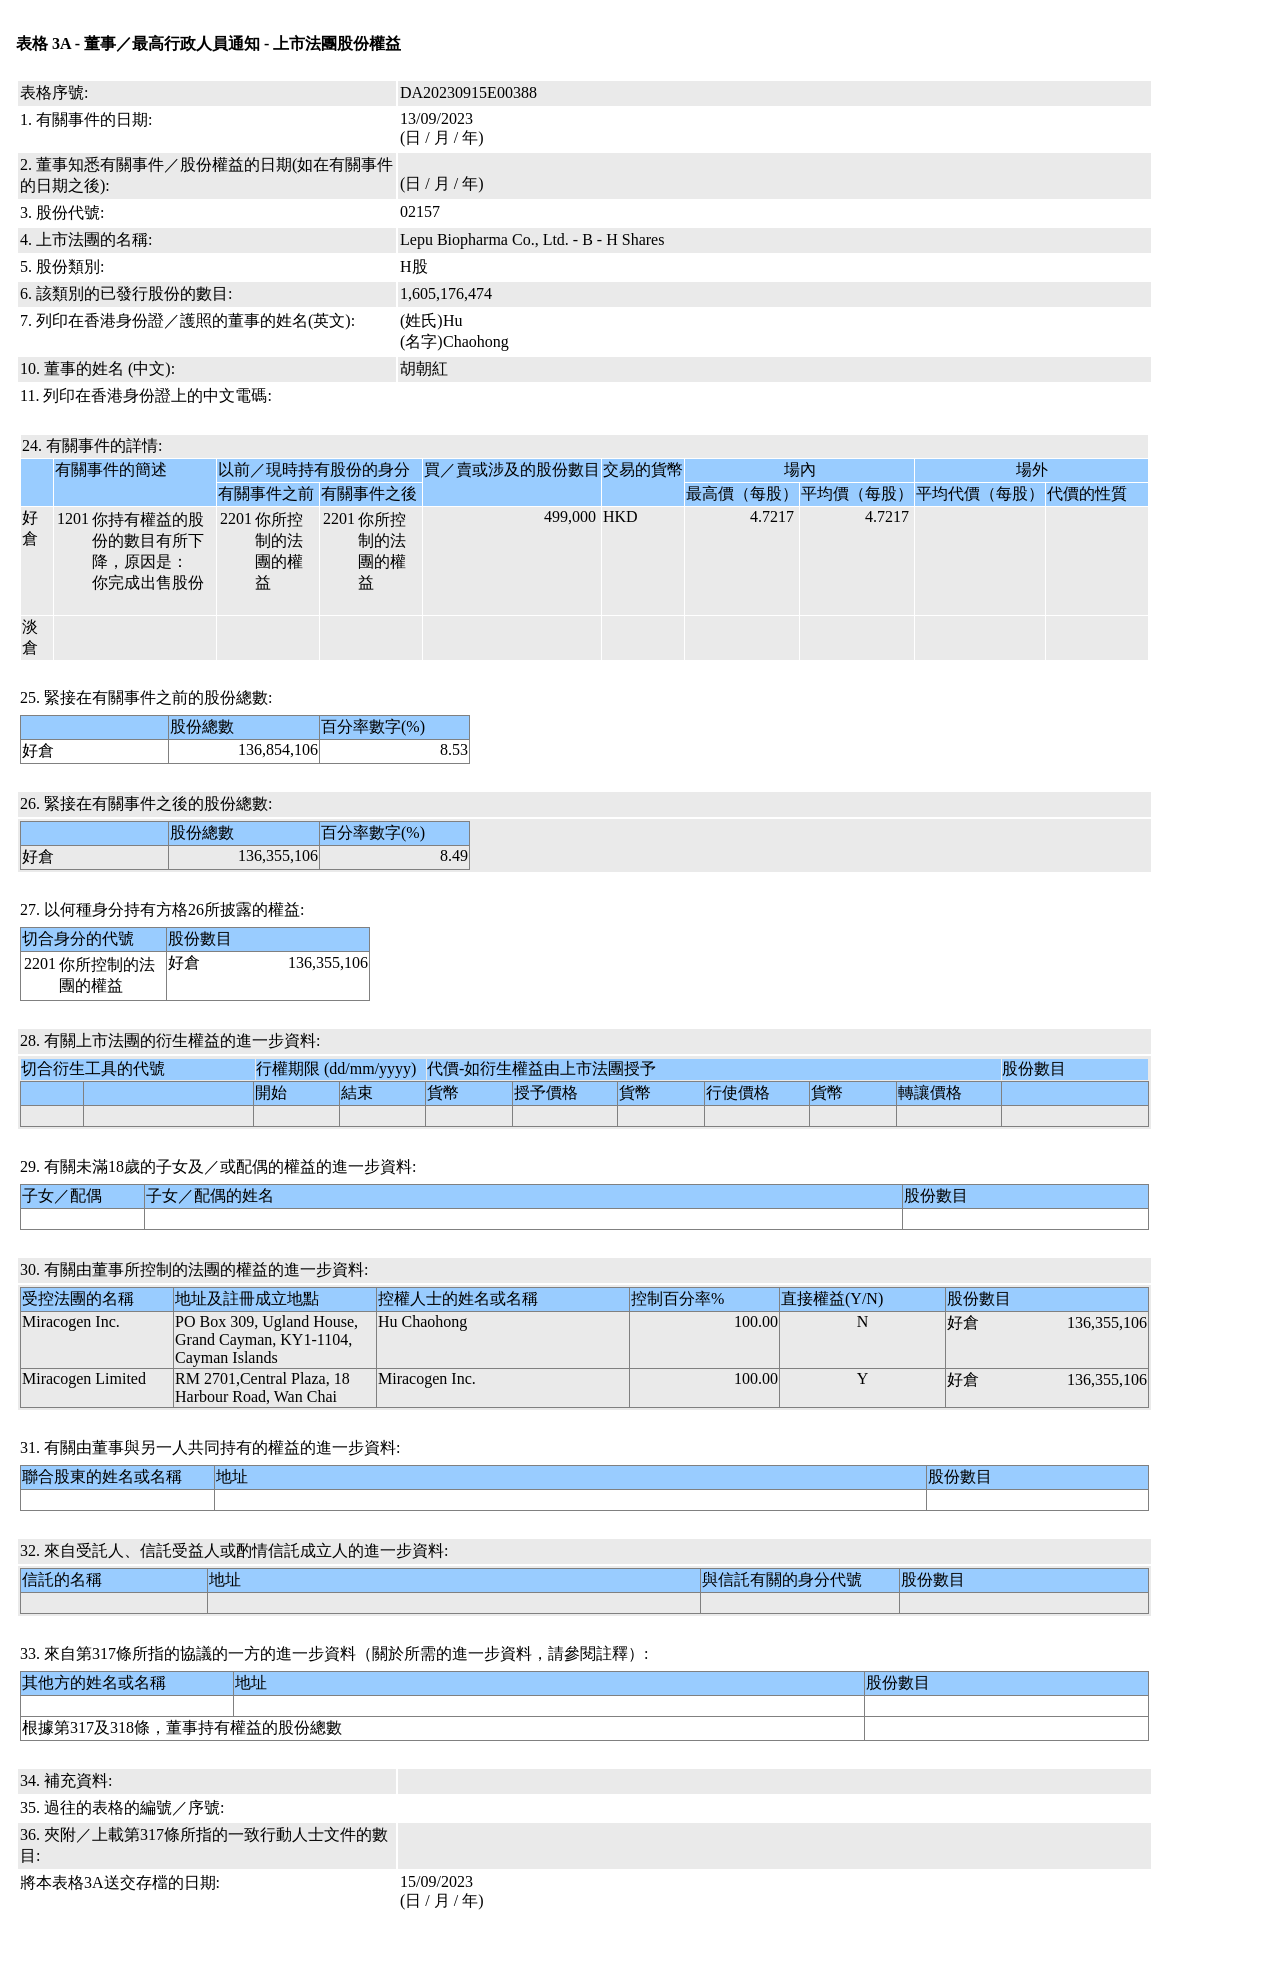 胡朝红售出乐普生物-B(02157.HK)49.9万股H股股份，价值约235.61万港元